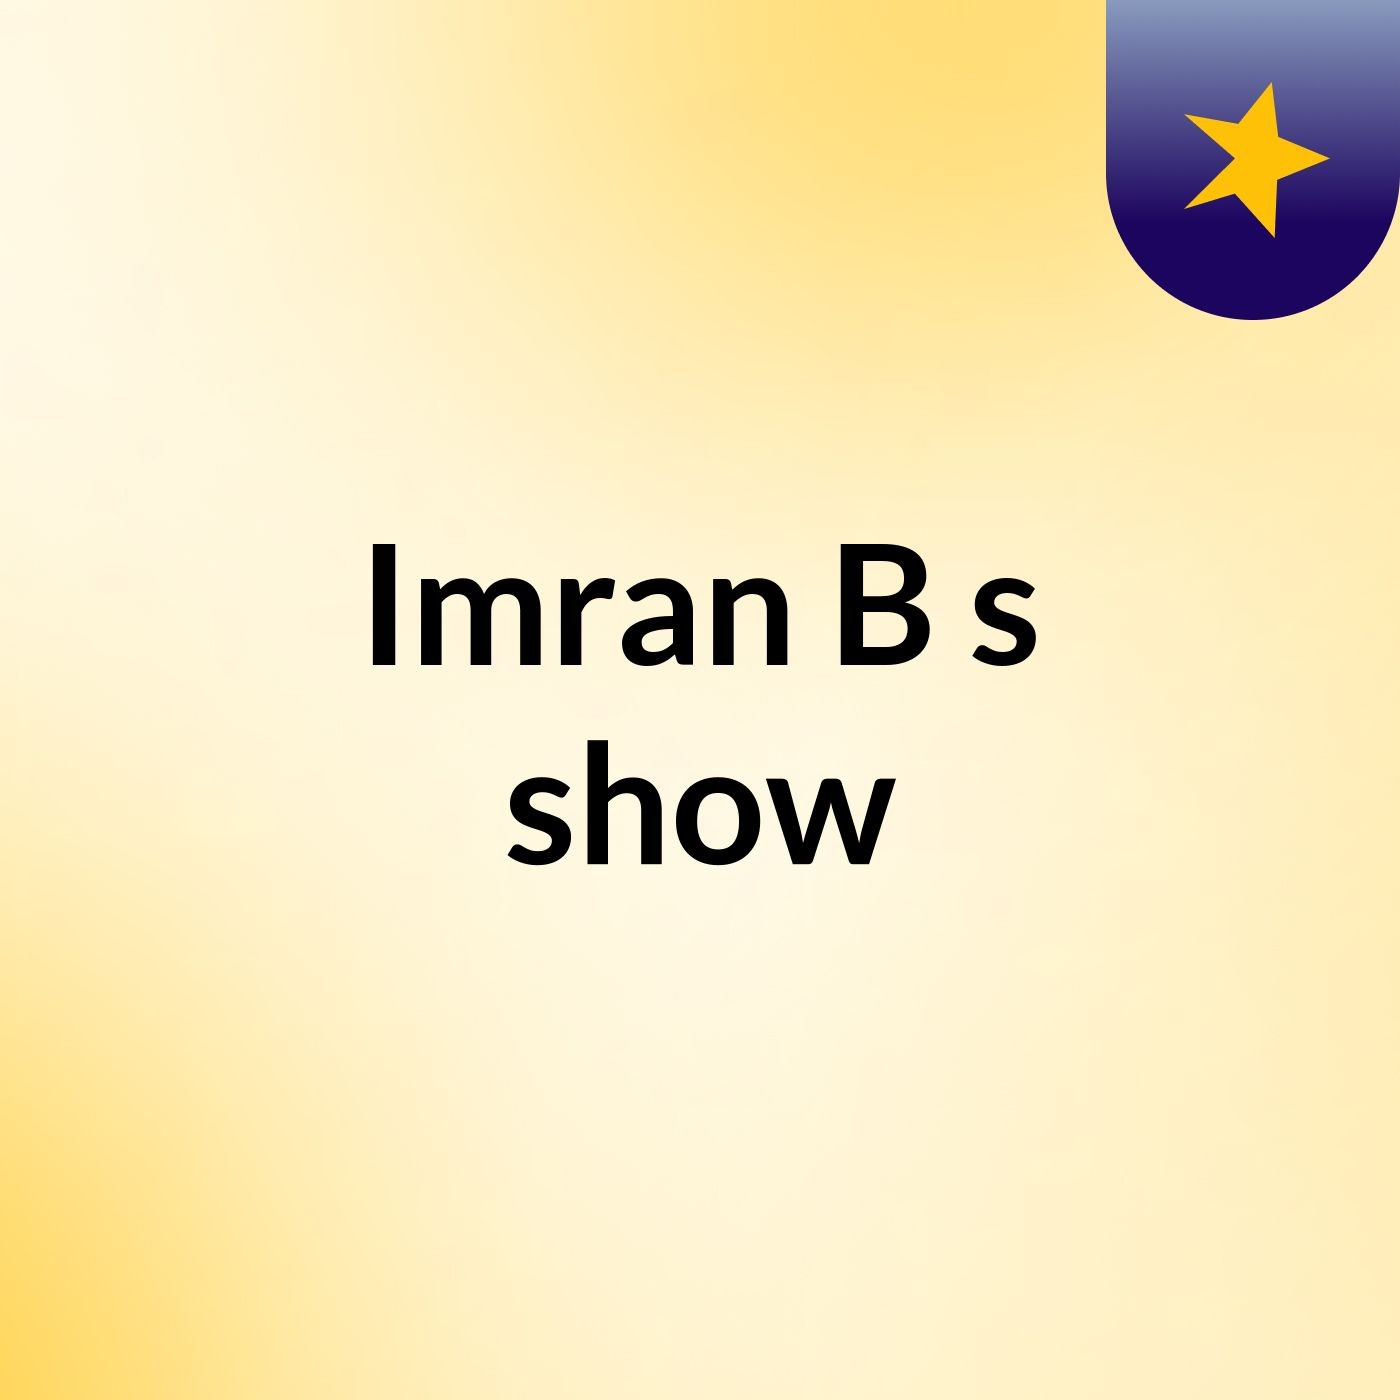 Imran B's show